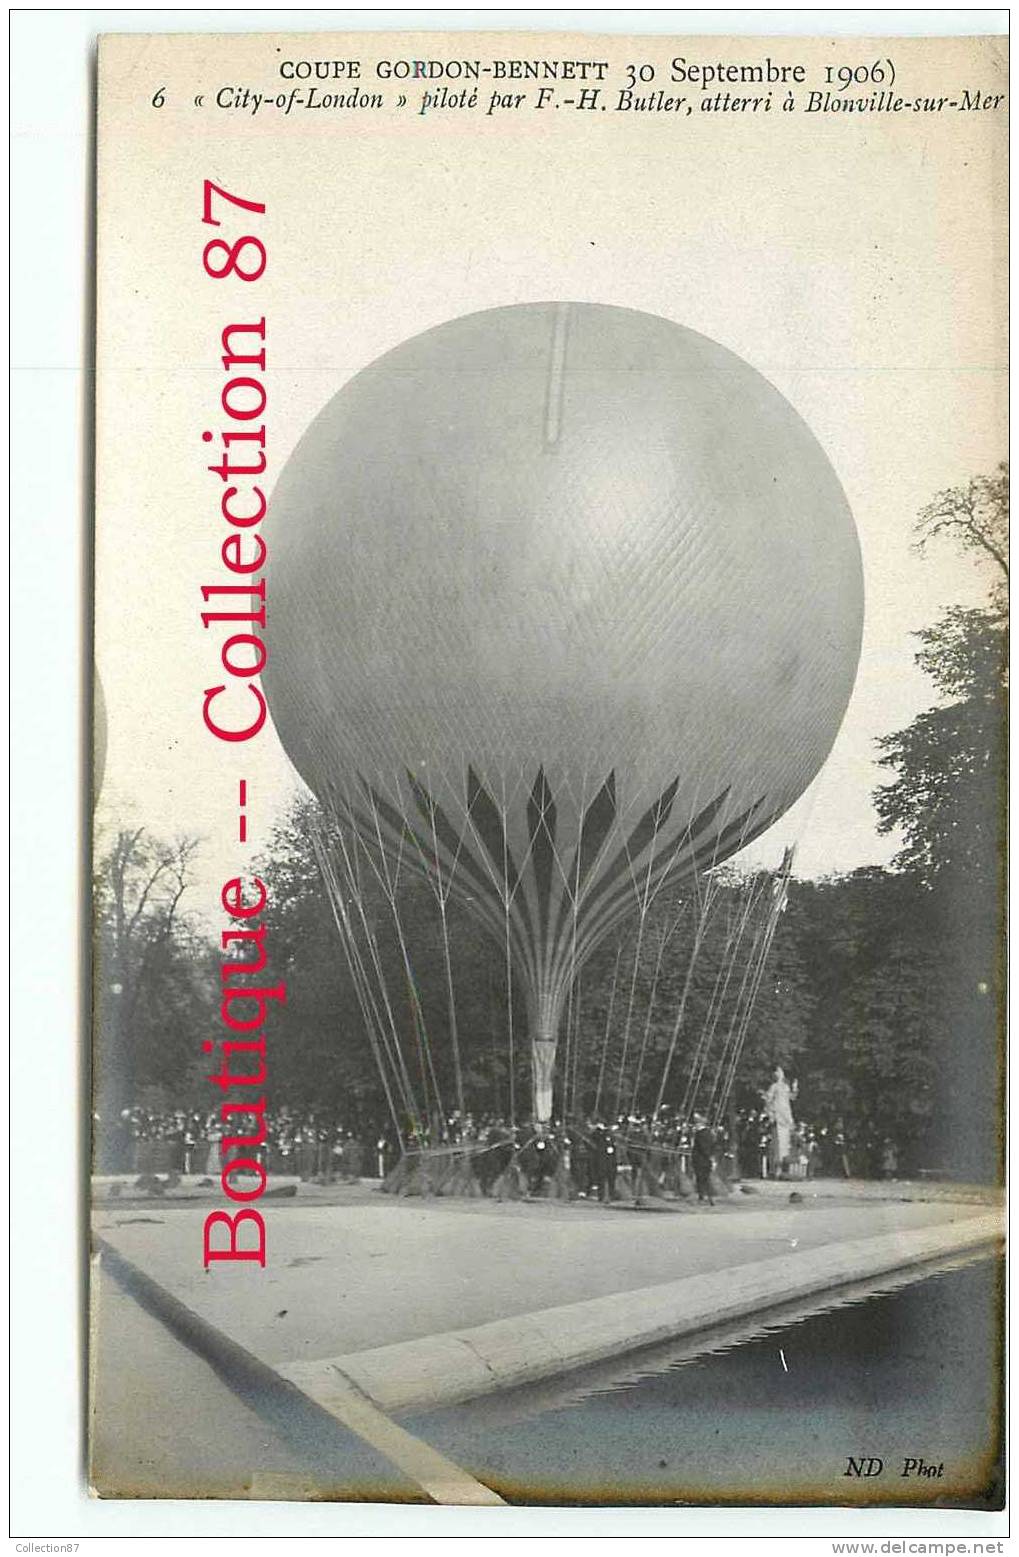 RARE - SANTOS DUMONT - COUPE GORDON BENNETT 1906 - SERIE COMPLETE 10 CARTES - BALLON - MONTGOLFIERE